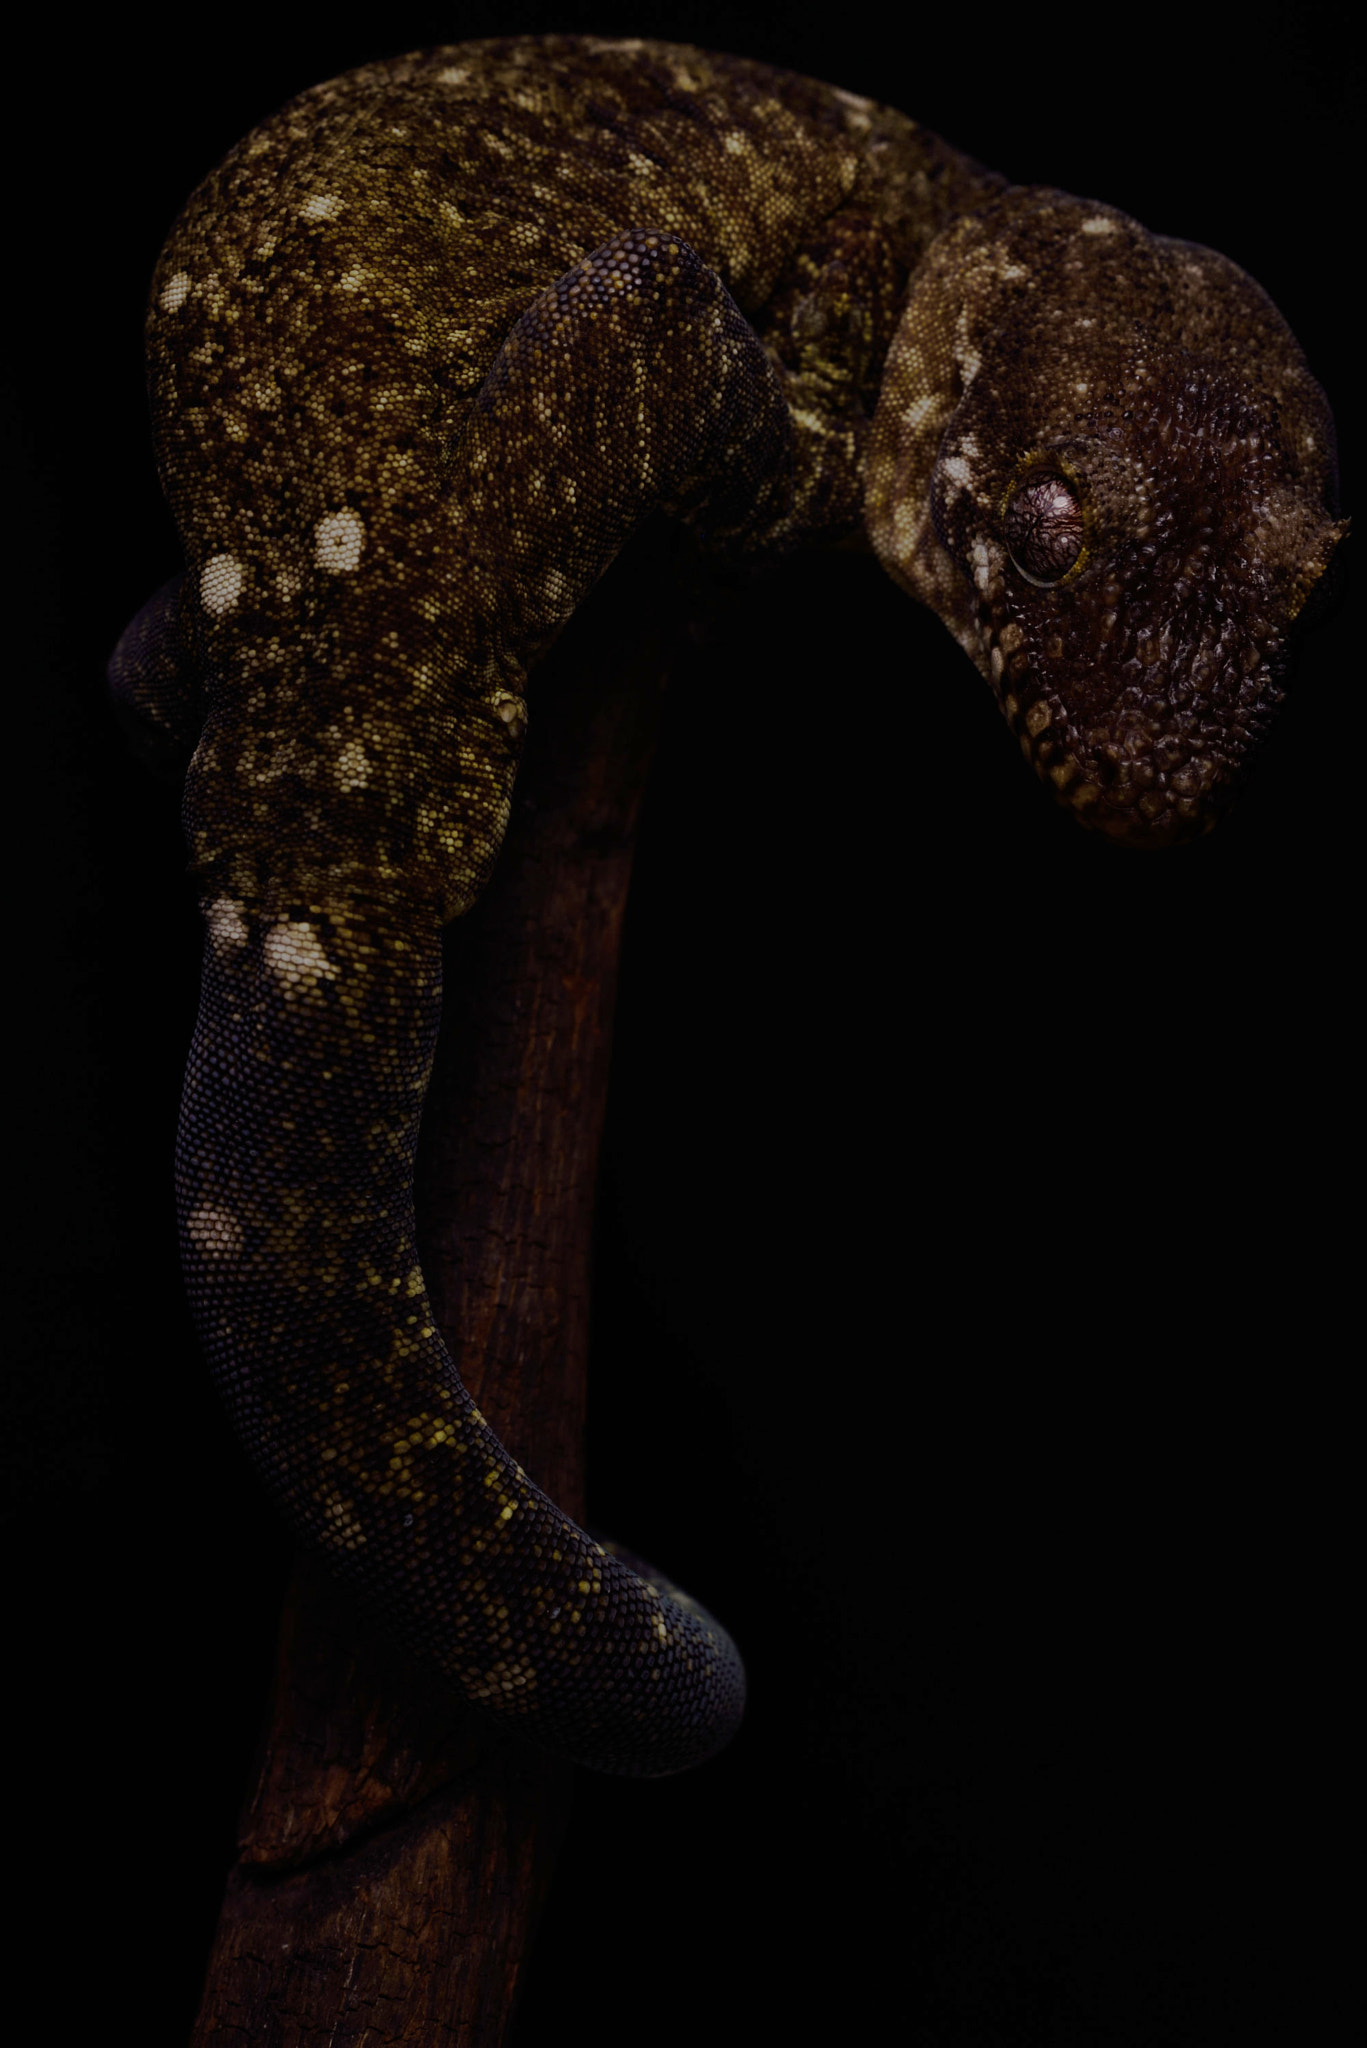 Nikon D750 sample photo. Rhacodactylus trachycephalus photography